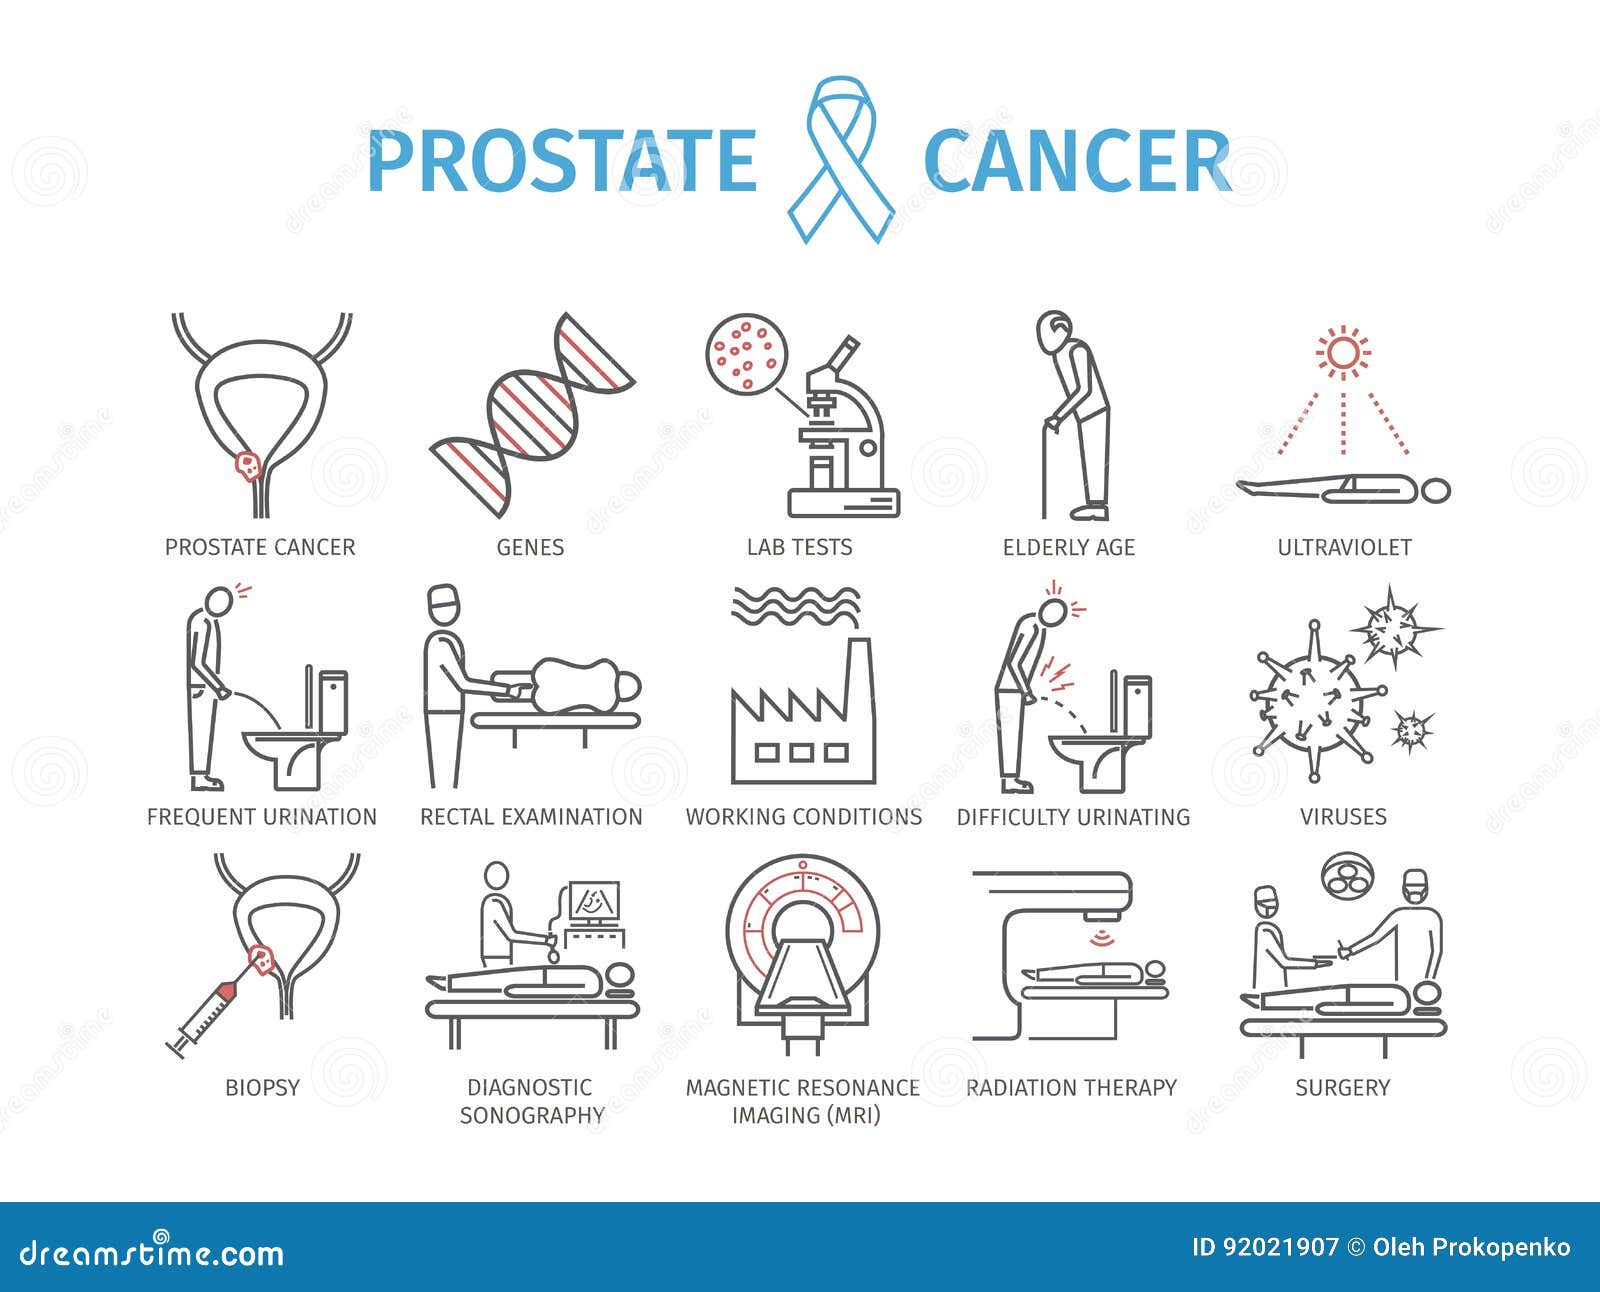 cancer de la prostate symptomes et causes